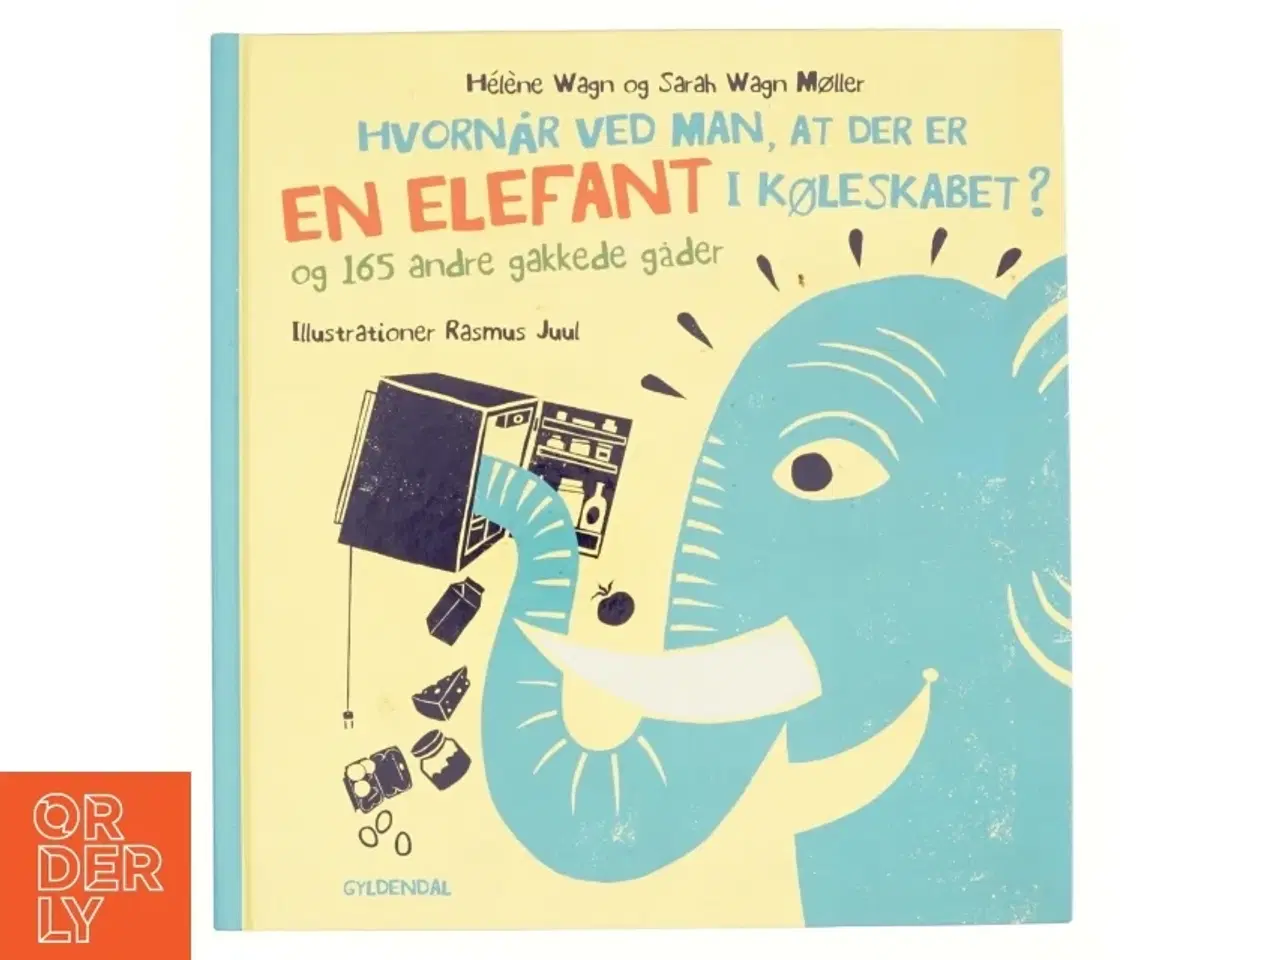 Billede 1 - Hvornår Ved Man, at Der Er en Elefant i Køleskabet? - Og 165 Andre Gakkede Gåder af Hélène Wagn, Sarah Wagn Møller (Bog)